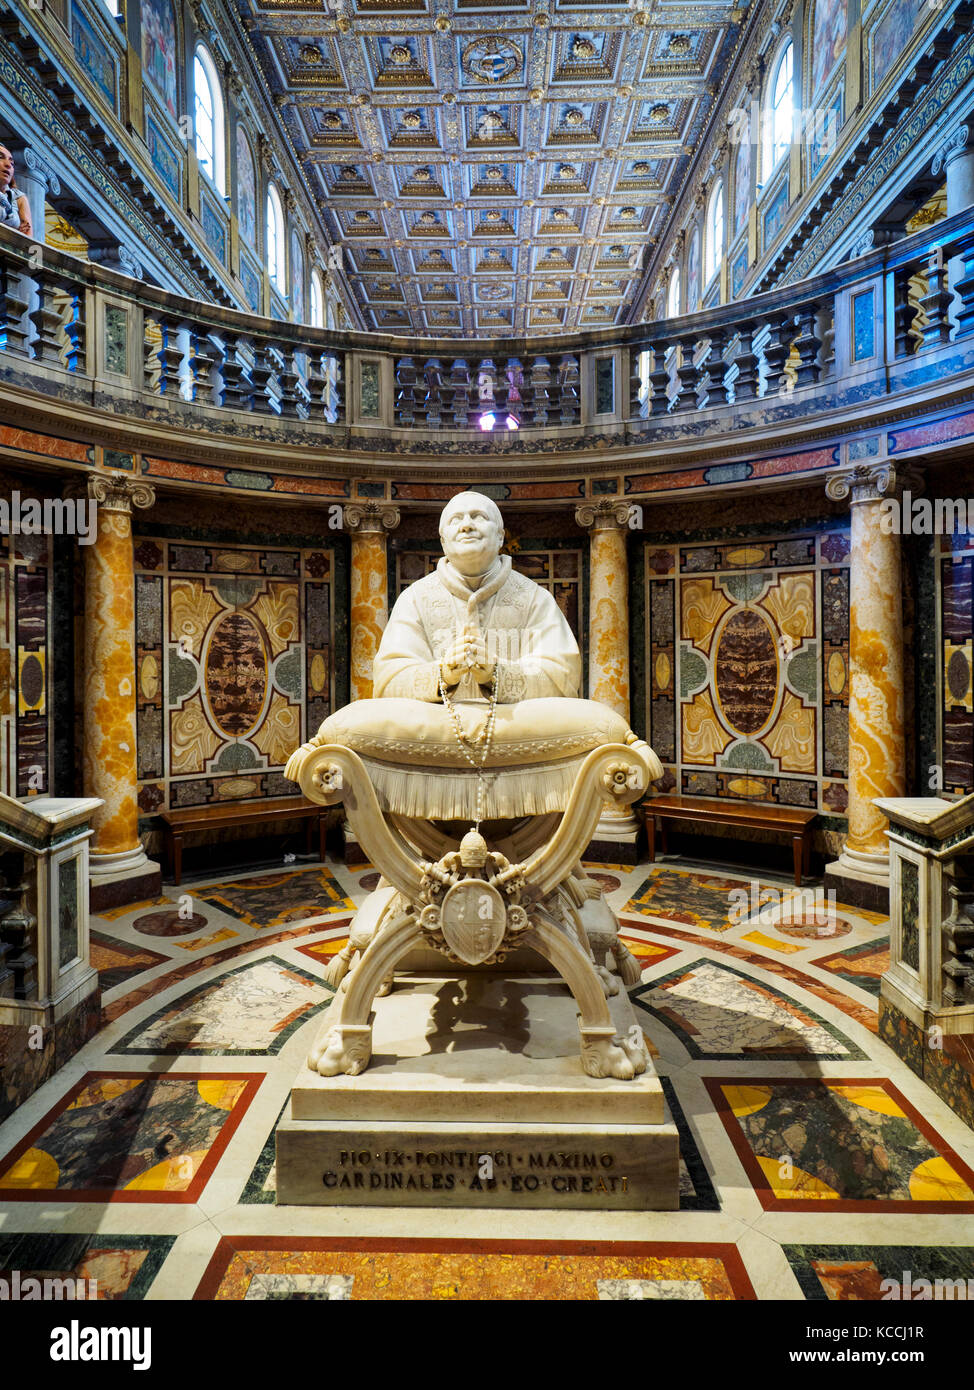 Statue of Pius IX in the Basilica di Santa Maria Maggiore - Rome, Italy Stock Photo